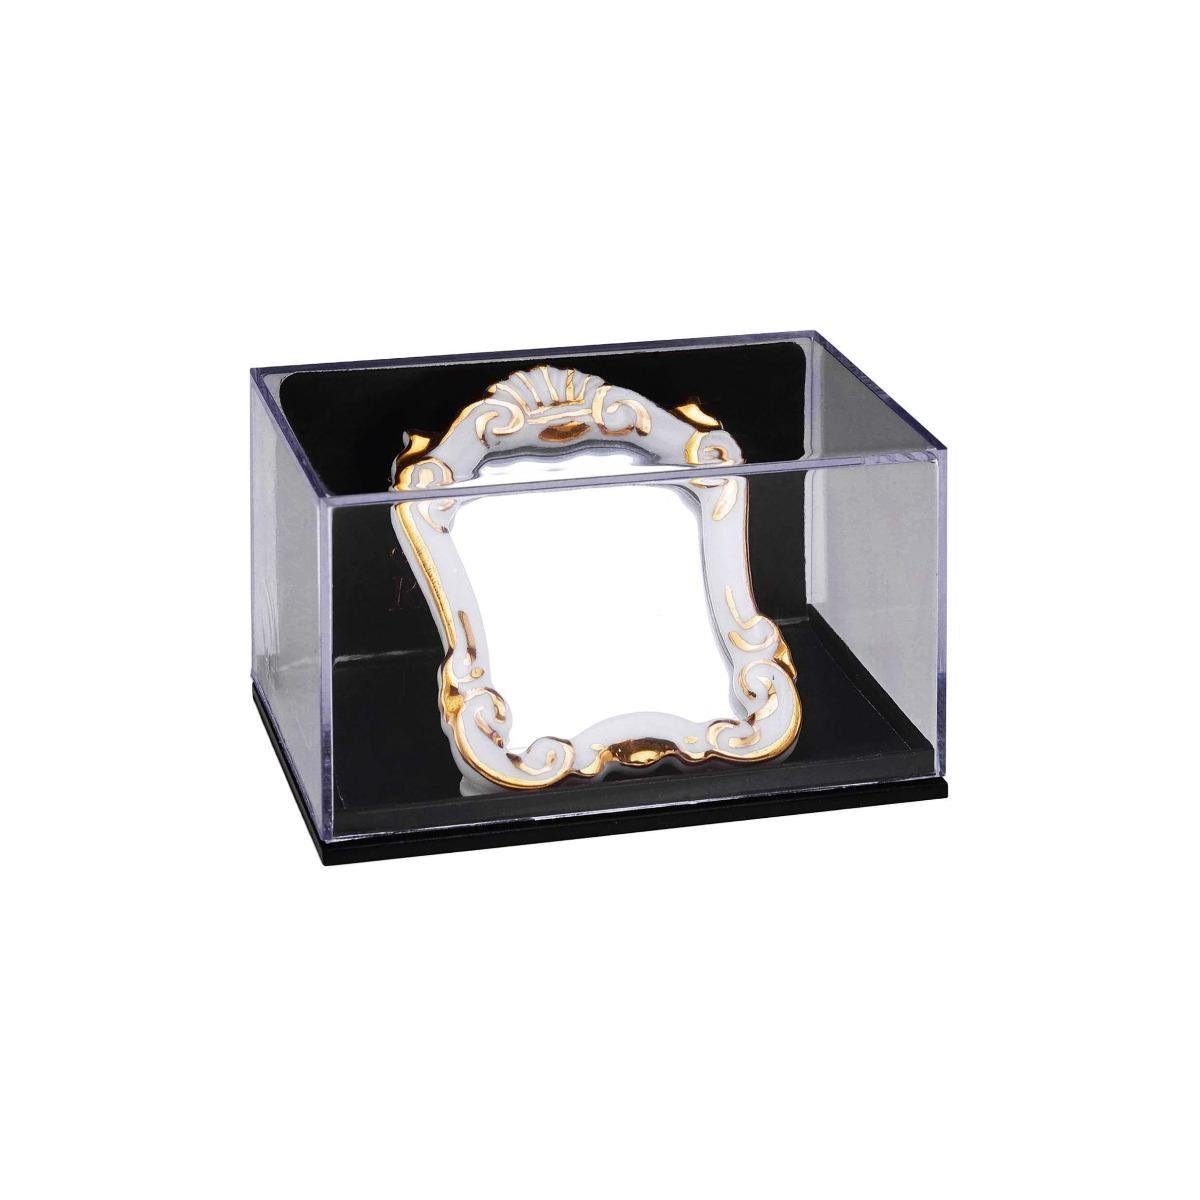 Reutter Porzellan Dekofigur 001.624/6 Miniatur Barockspiegel, weiß, 